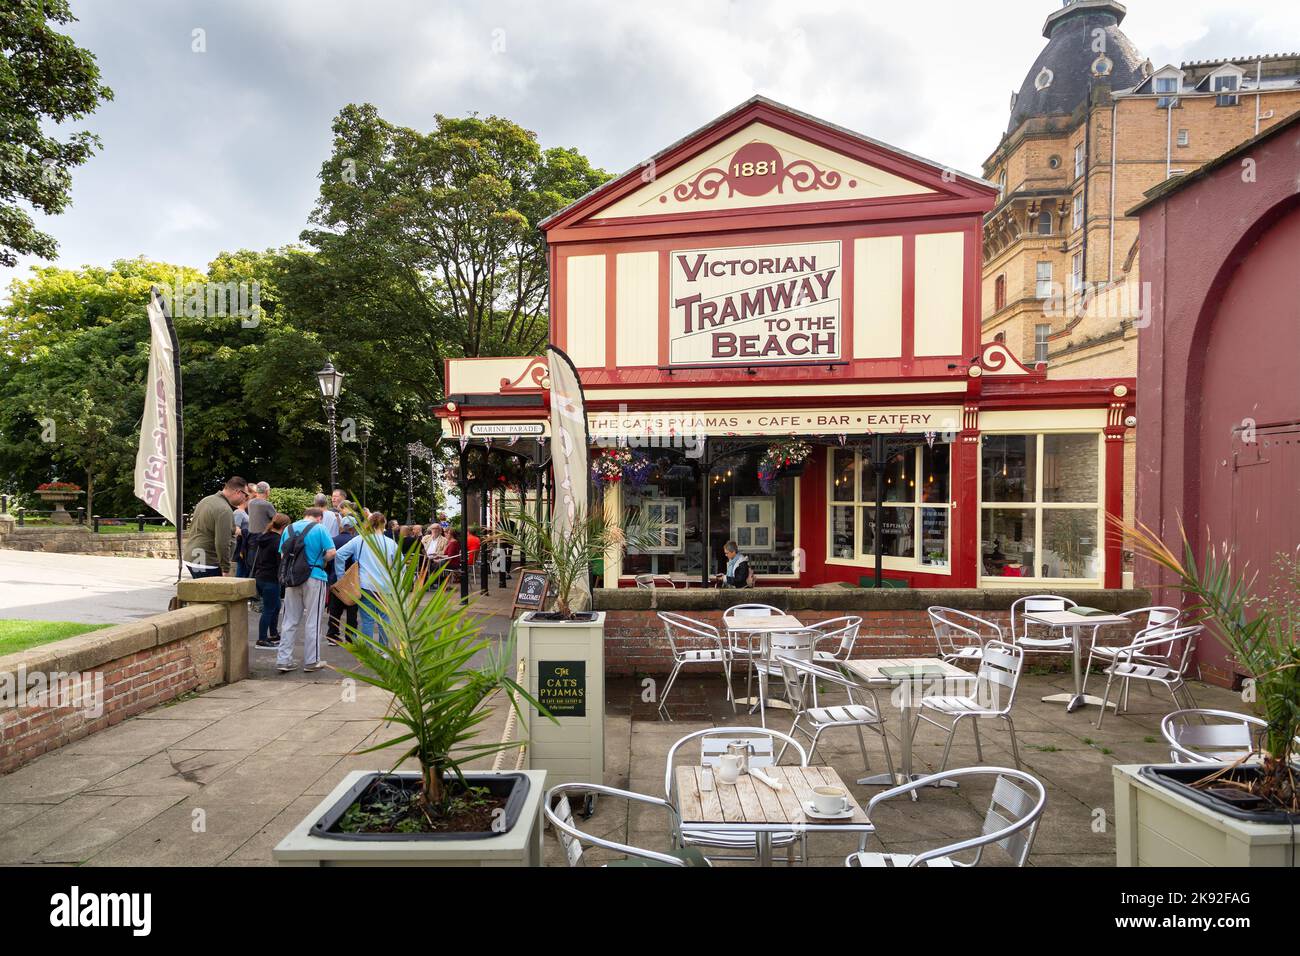 Scarborough, Royaume-Uni : The Cat's Pyjashort Cafe Bar and Eatery, St Nicholas Cliff. Un restaurant contemporain inspiré de 1920s. Banque D'Images